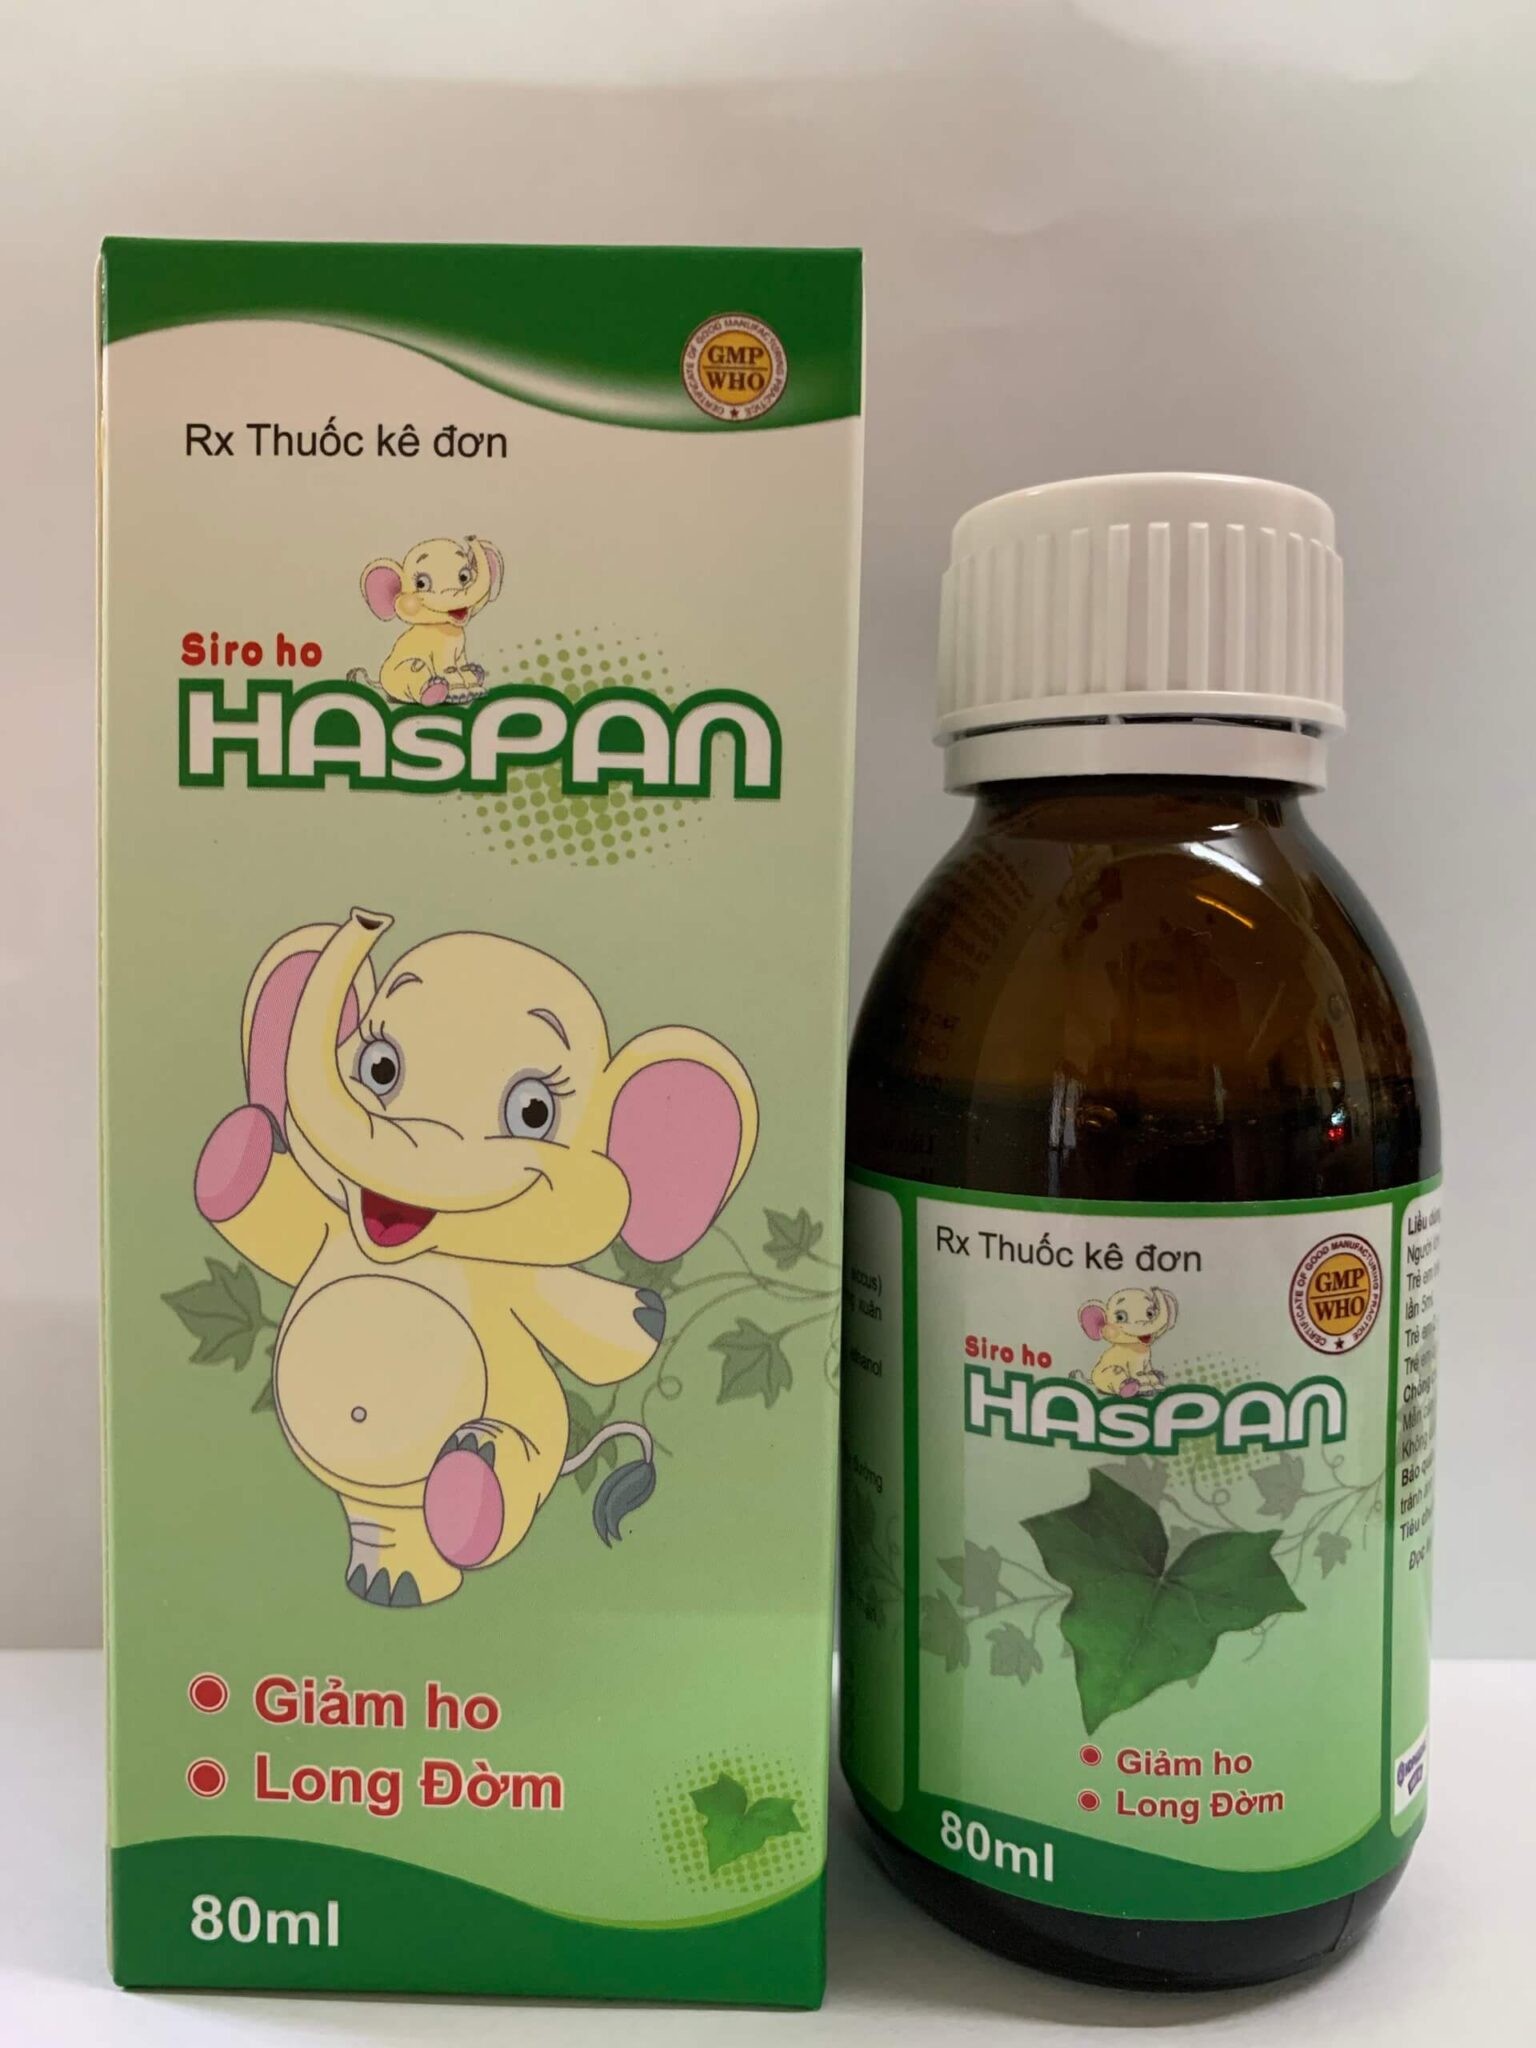 Những điều cần biết về sản phẩm trị ho Haspan